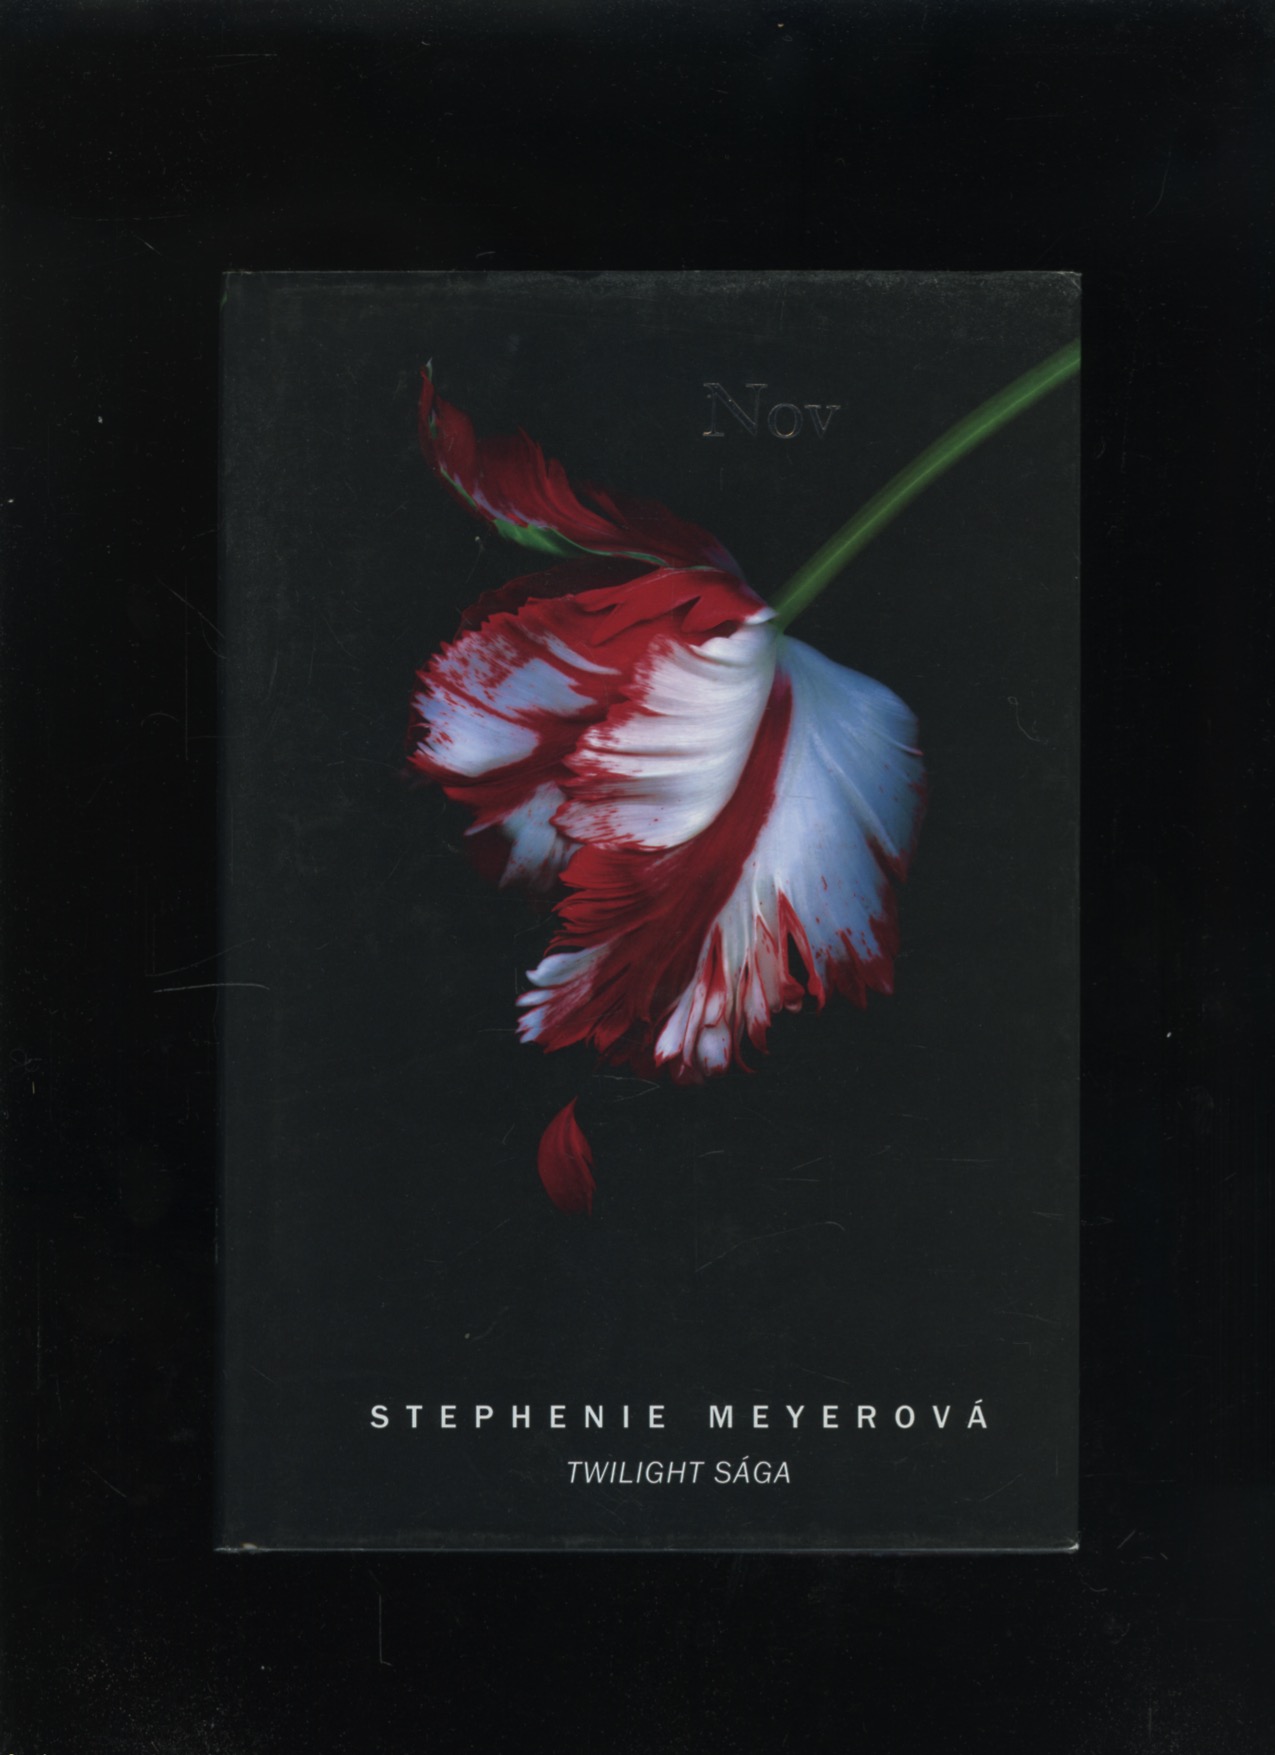 Nov (Stephenie Meyerová)